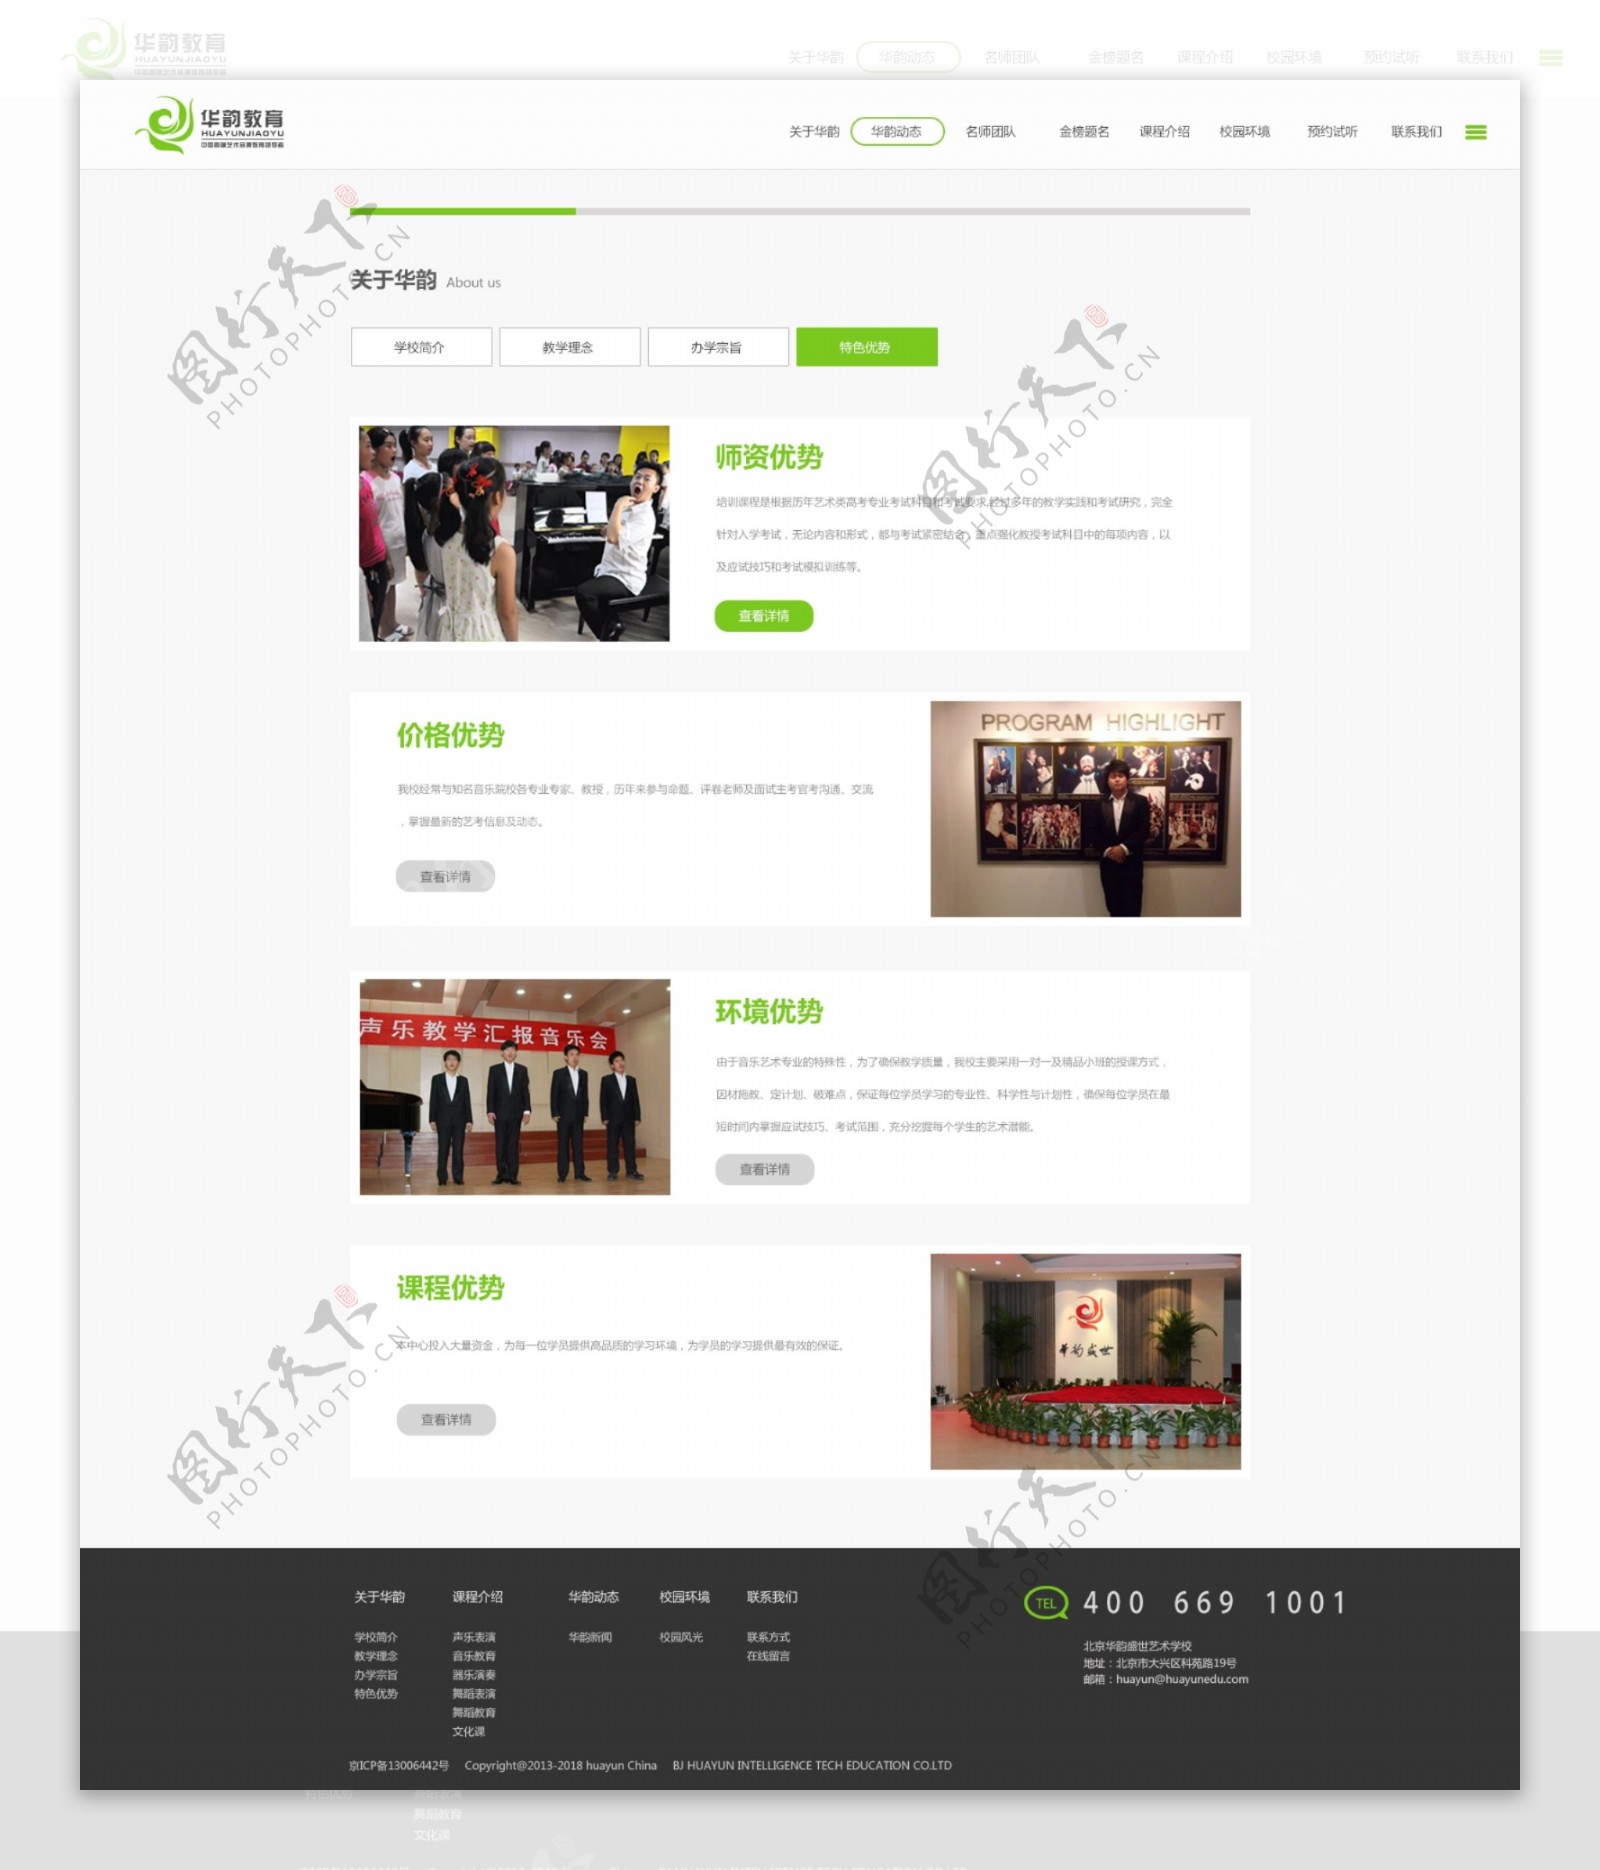 教育网站网页素材设计模板